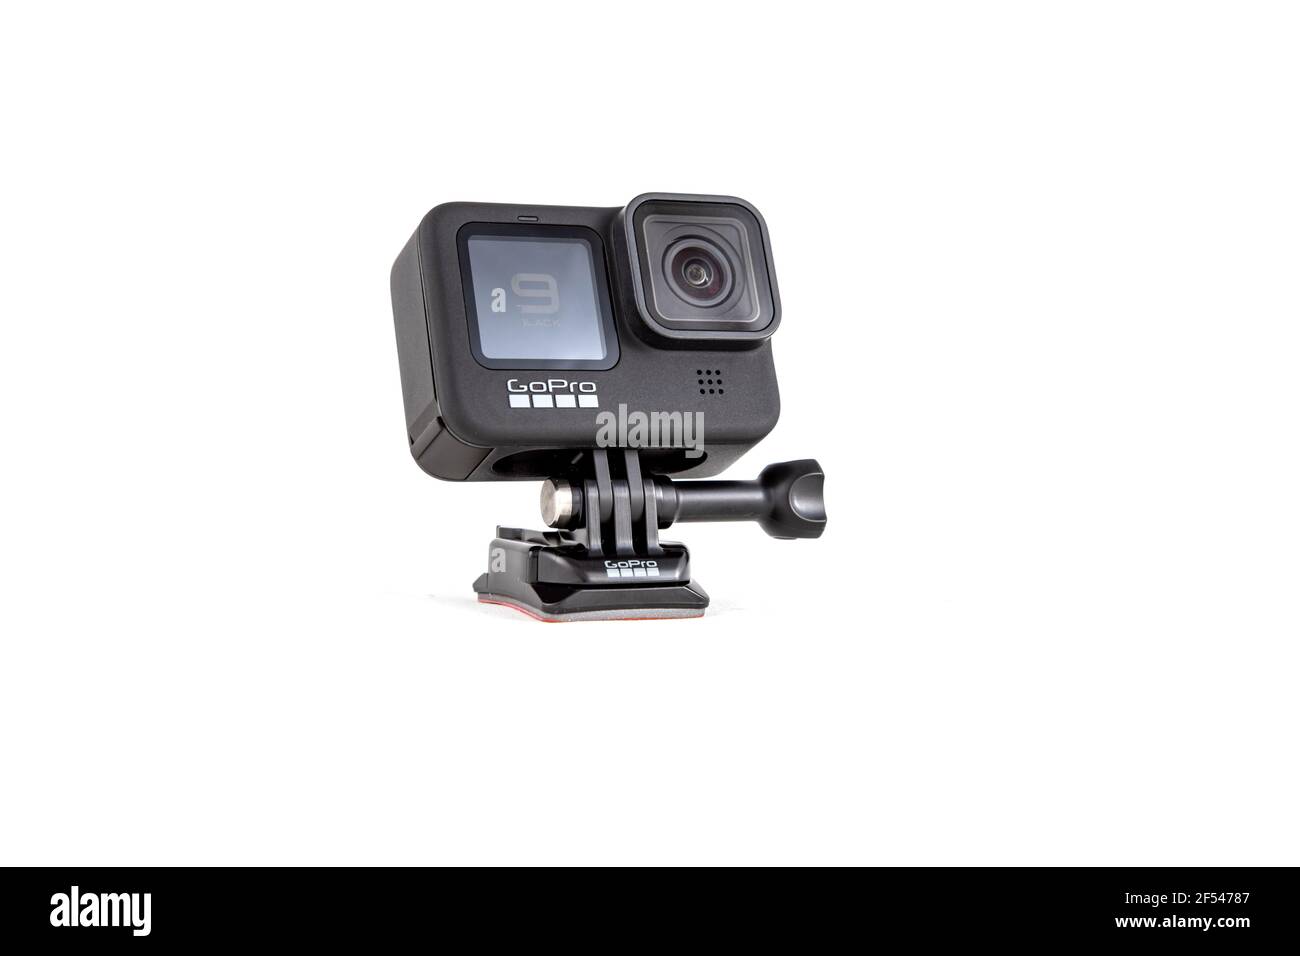 moscou, russie - Novemner 11, 2020: Nouvelle caméra d'action phare gopro HERO 9 noir. Vue latérale, arrière-plan blanc isolé. Banque D'Images